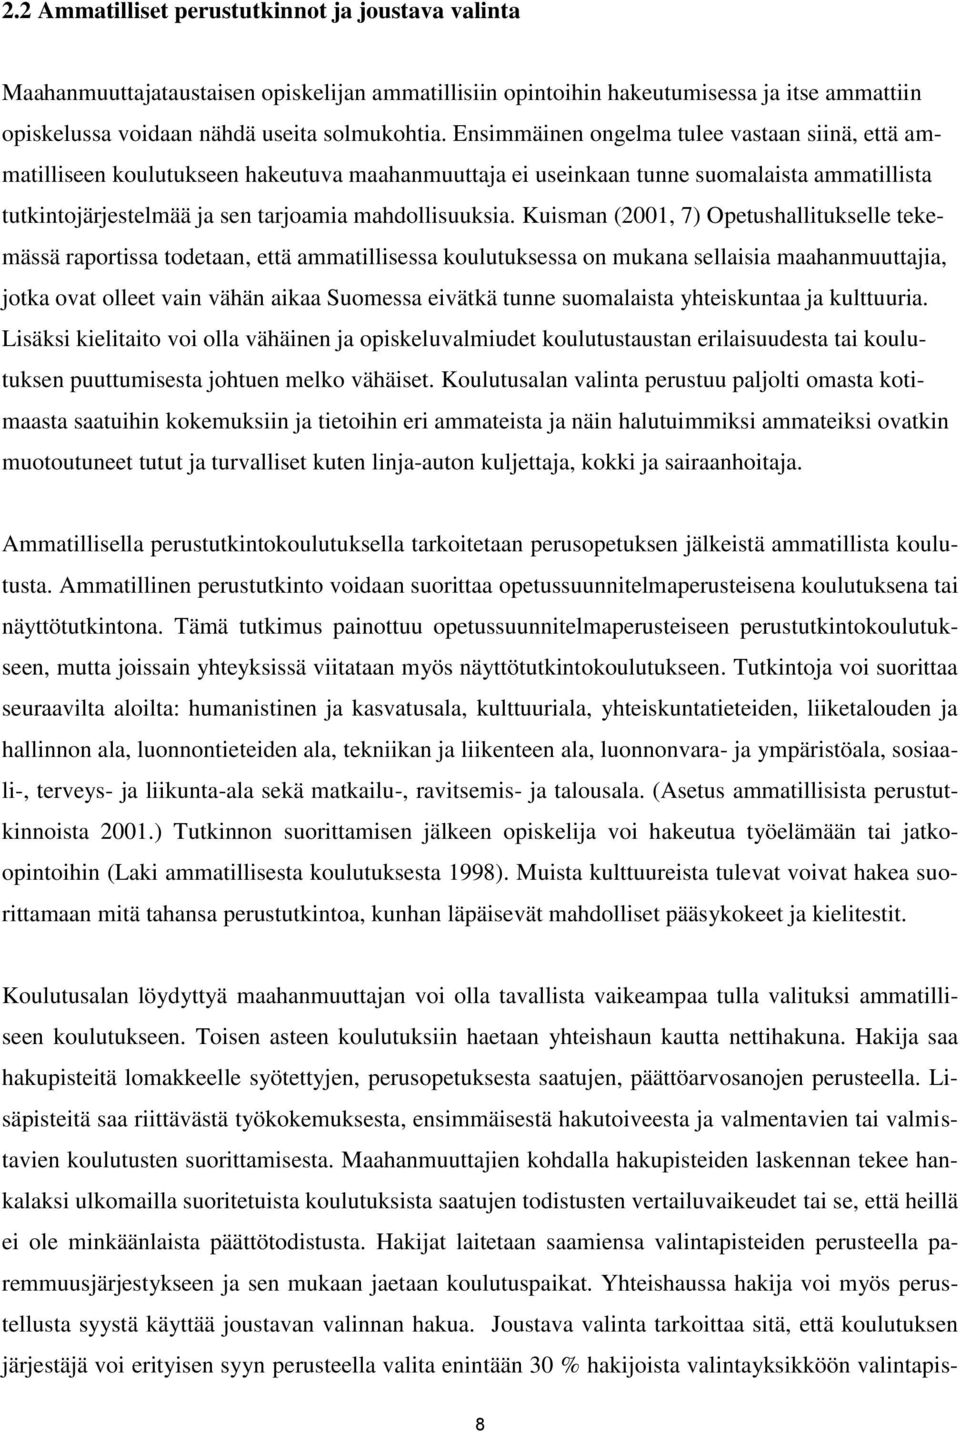 Kuisman (2001, 7) Opetushallitukselle tekemässä raportissa todetaan, että ammatillisessa koulutuksessa on mukana sellaisia maahanmuuttajia, jotka ovat olleet vain vähän aikaa Suomessa eivätkä tunne